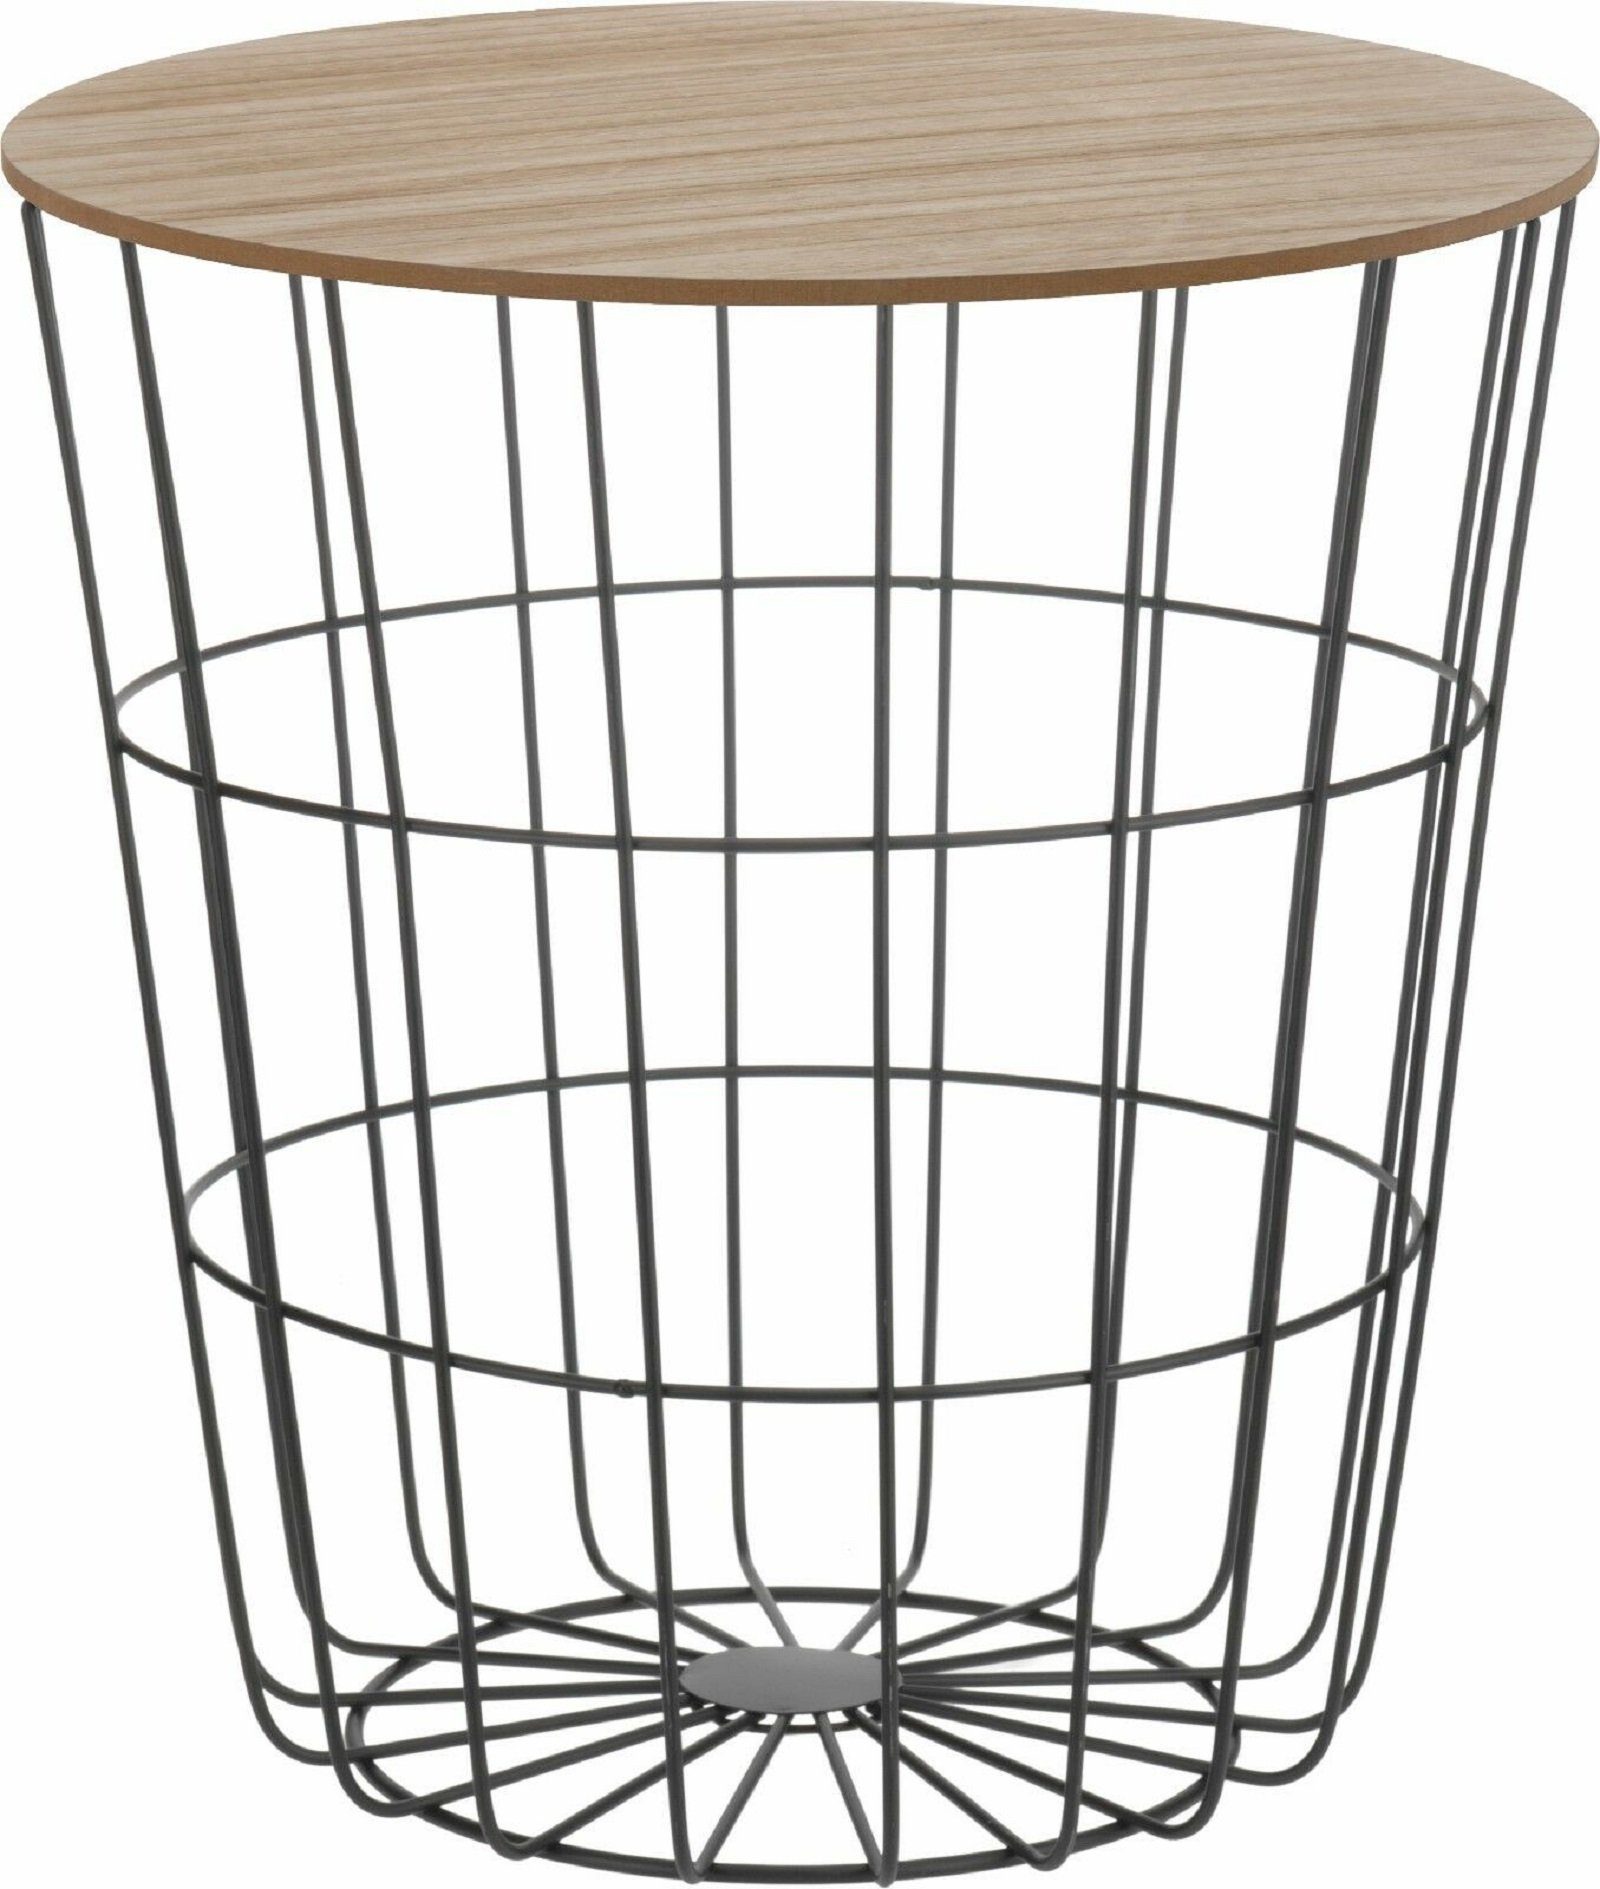 Meinposten Beistelltisch Tisch mit Stauraum Ø 39 cm H=41 cm Metall/Holz Nachttisch Schwarz, Durchmesser ca. 39 cm Höhe ca. 41 cm